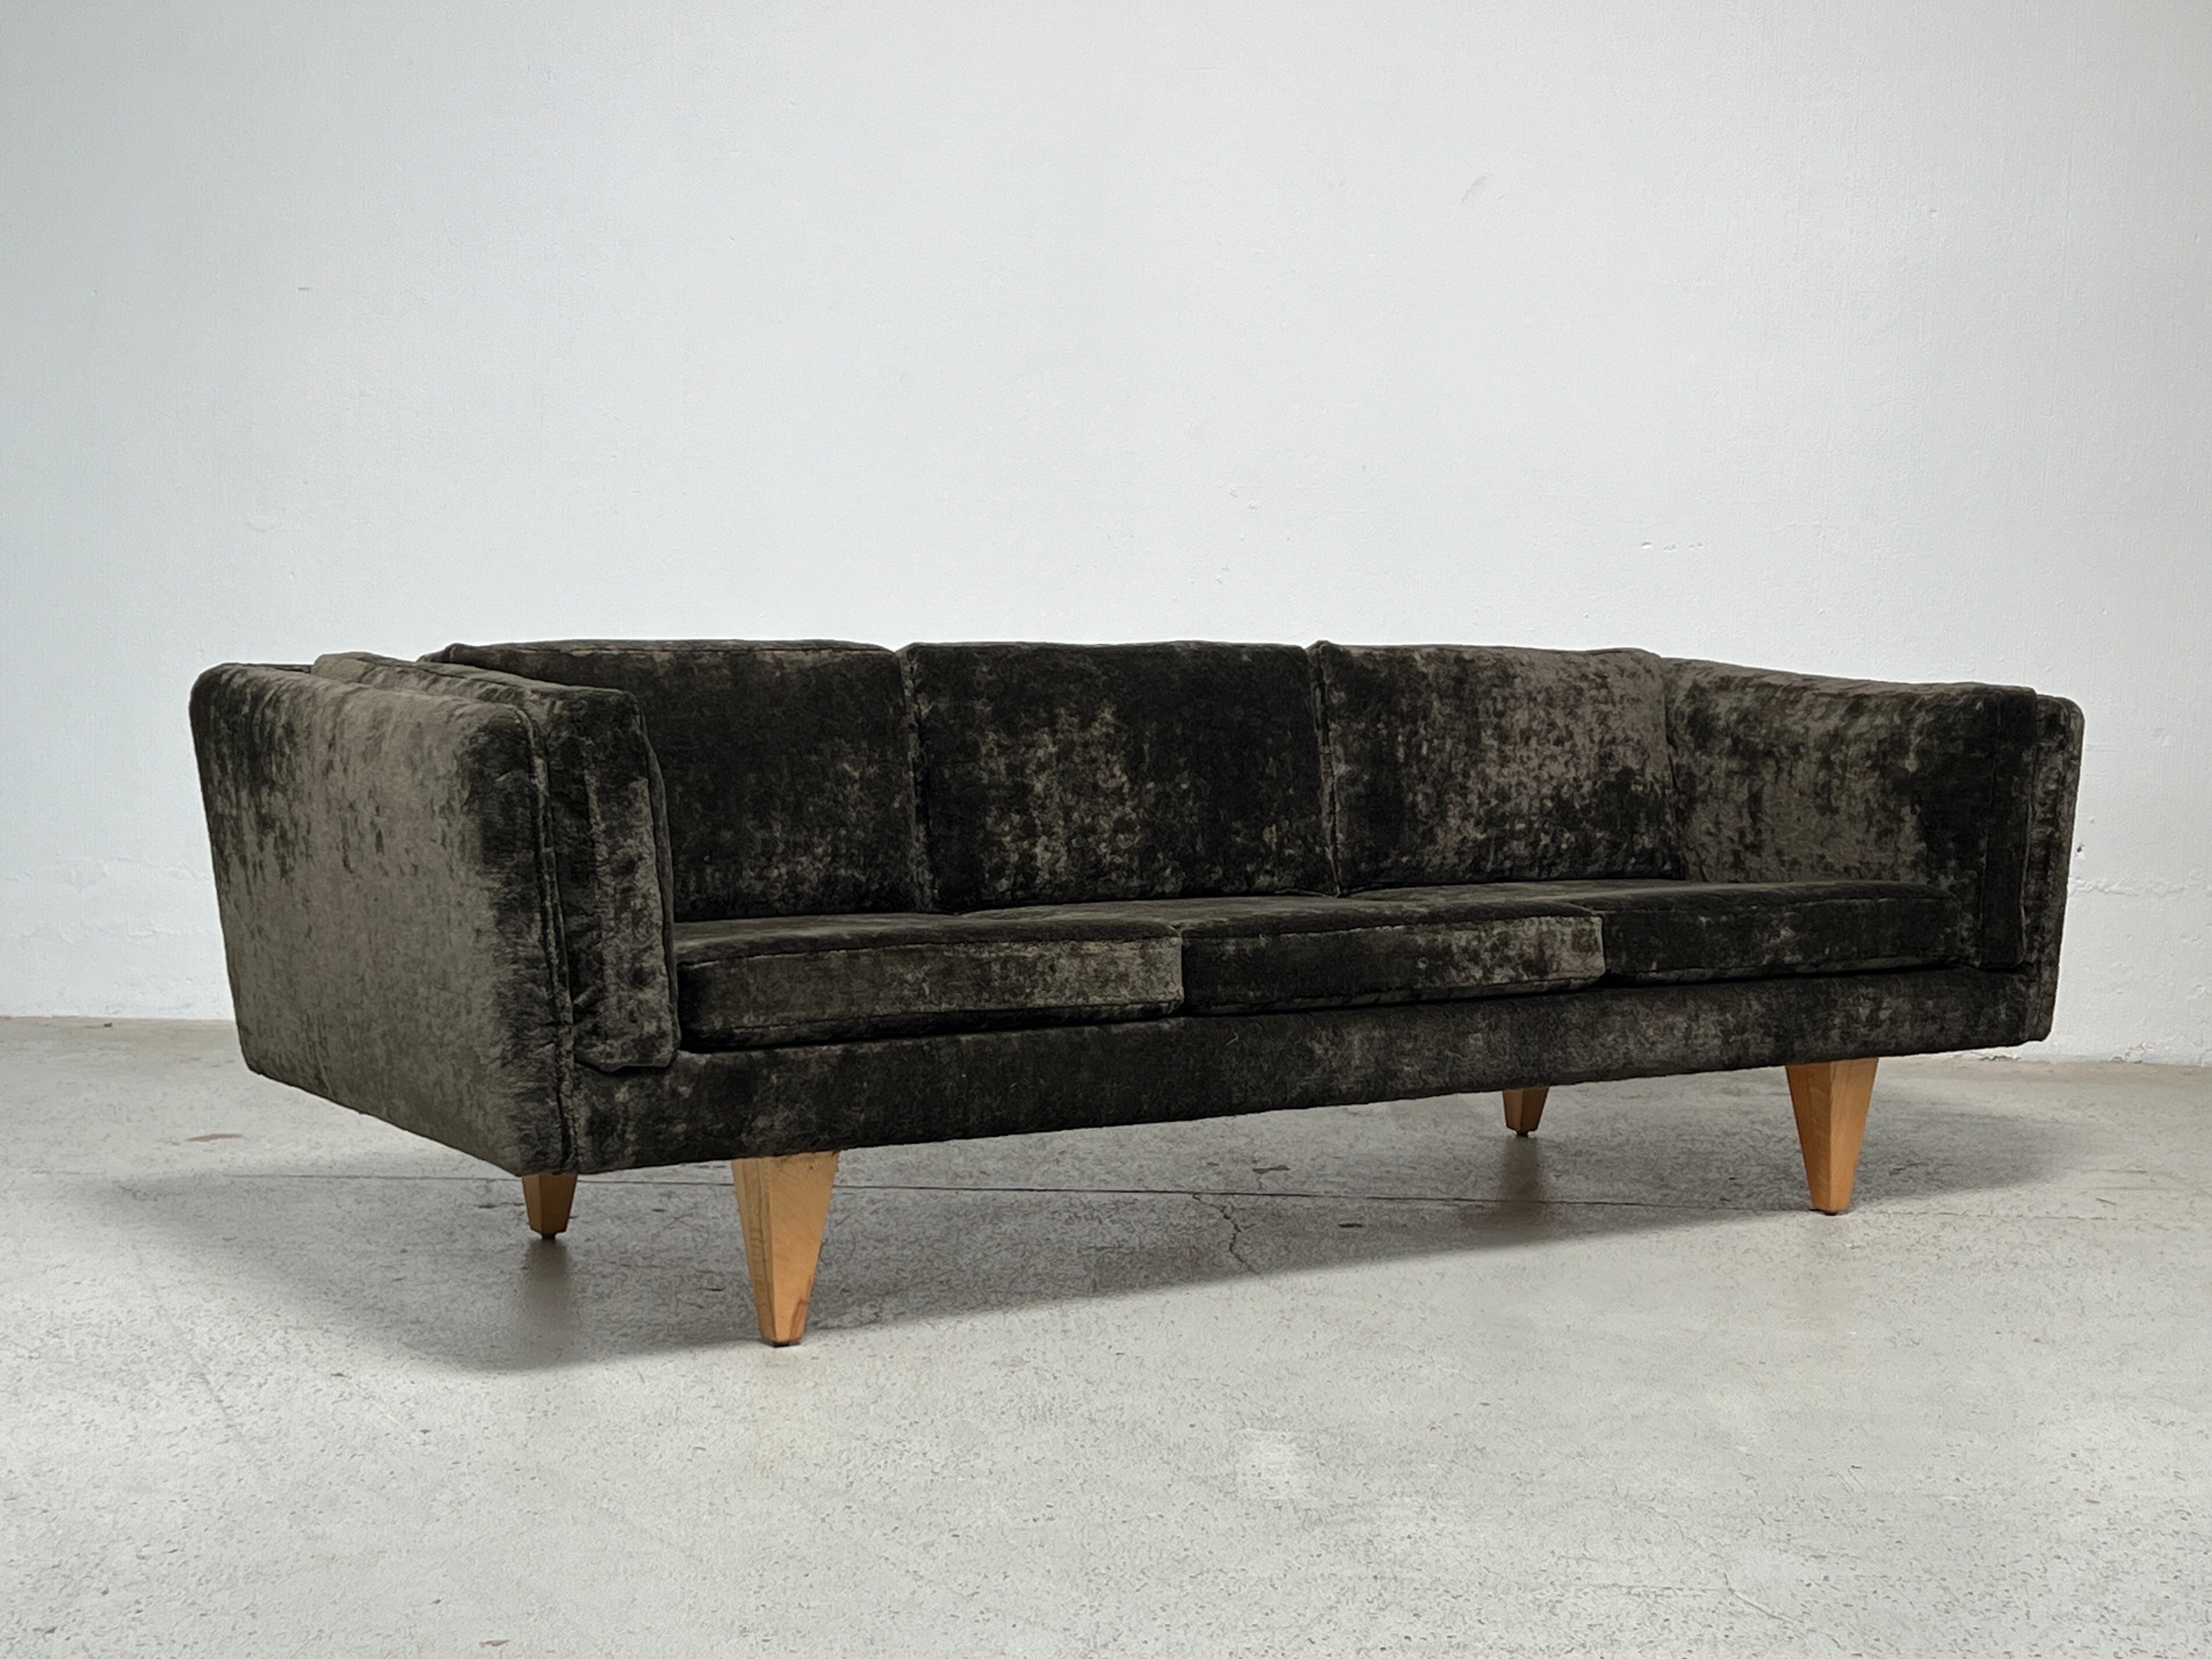 Ein wunderschön restauriertes V11-Sofa, entworfen von Illum Wikkelsø. Die ursprünglichen Birkenbeine wurden aufgearbeitet und das Sofa wurde mit dickem Samt in HOLLY HUNT / Lush / Dusk neu gepolstert. Die Rückenkissen sind mit Daunen gefüllt und